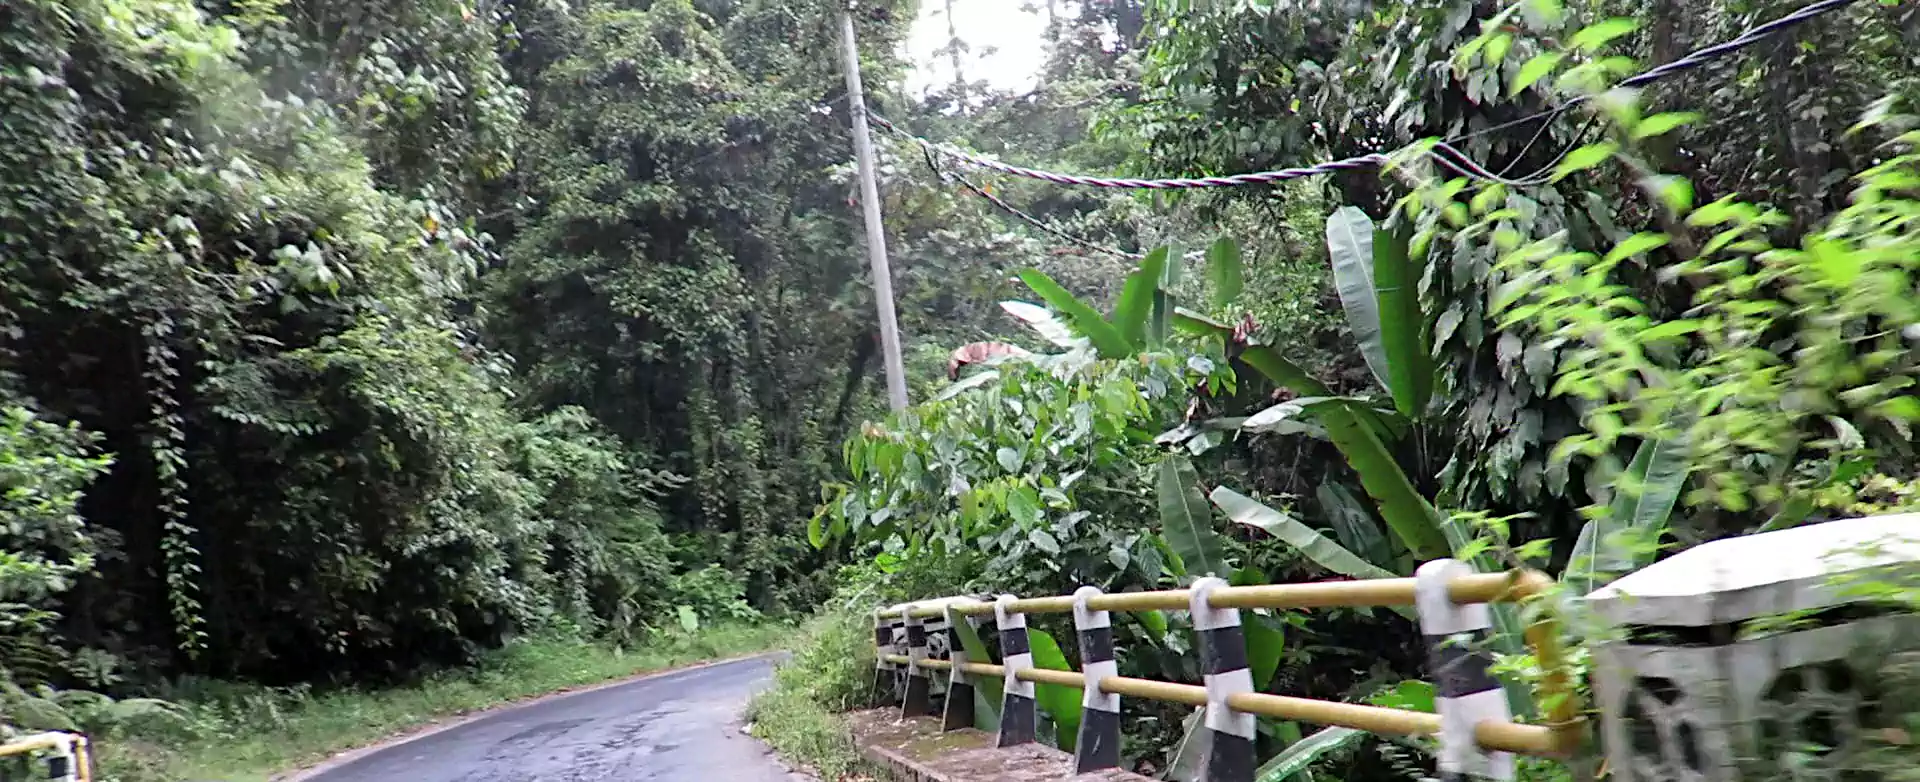 Through the jungle to Liwa Lampung Sumatra.